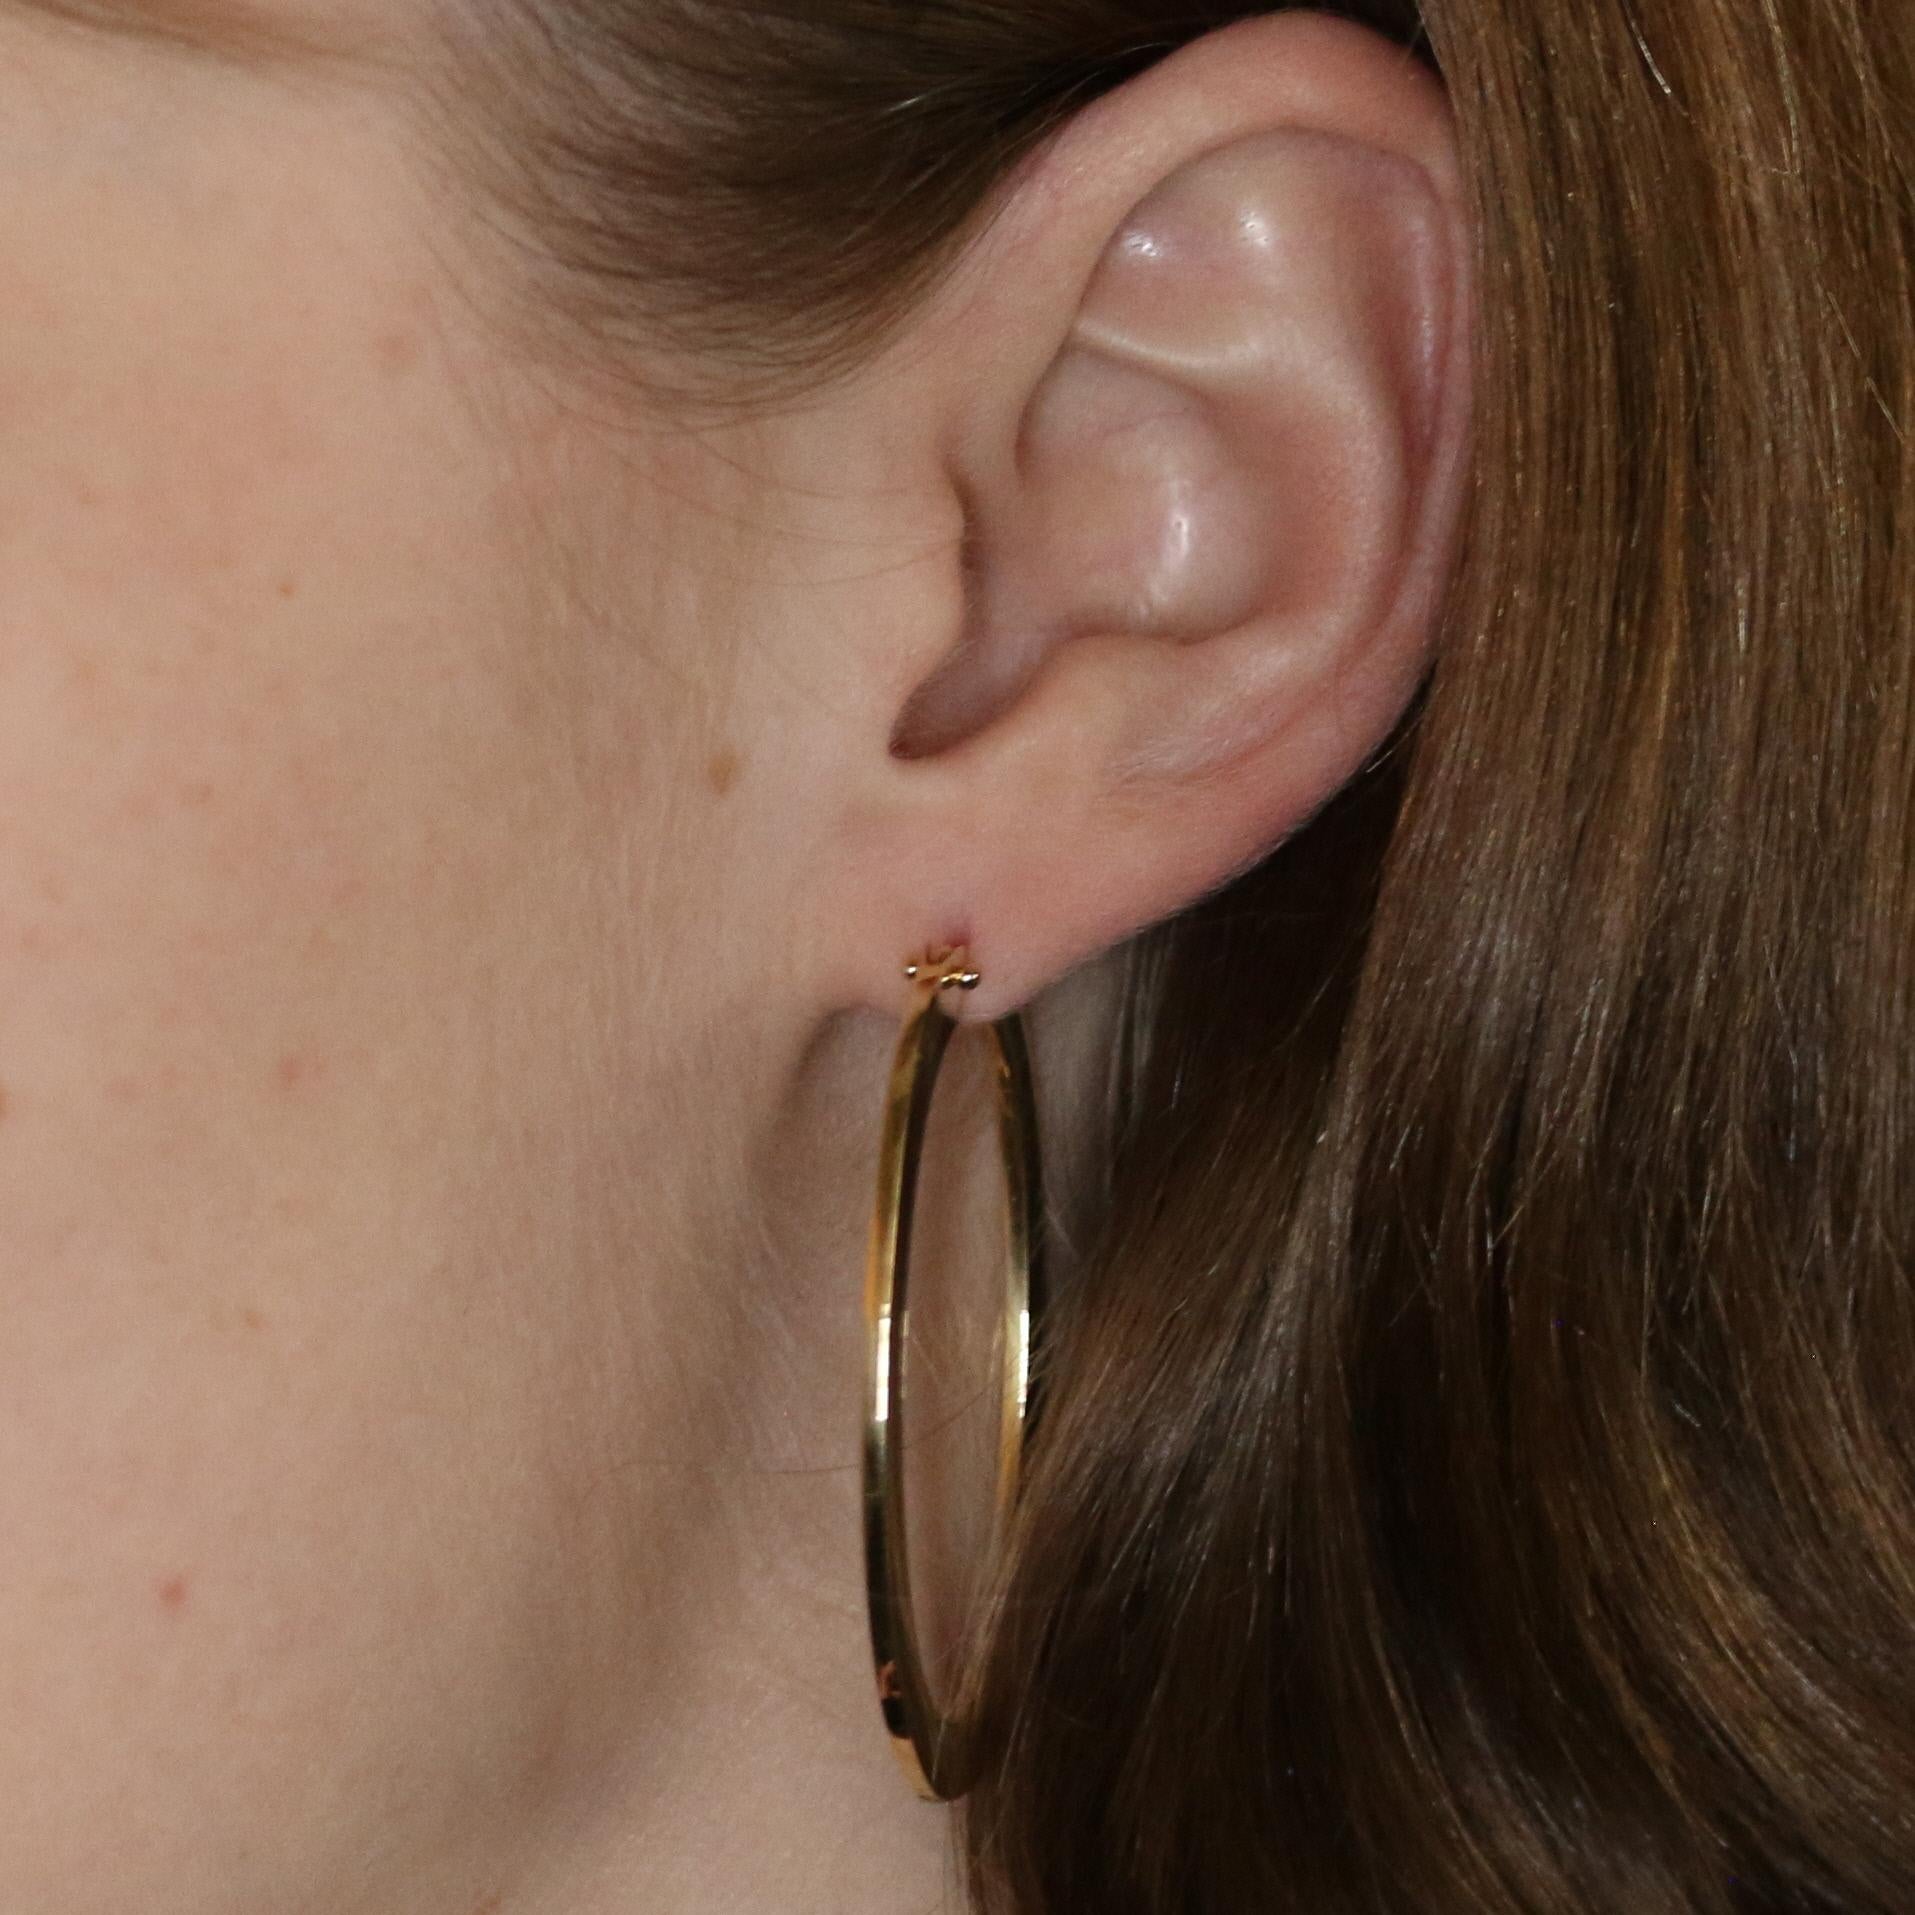 roberto coin oval hoop earrings